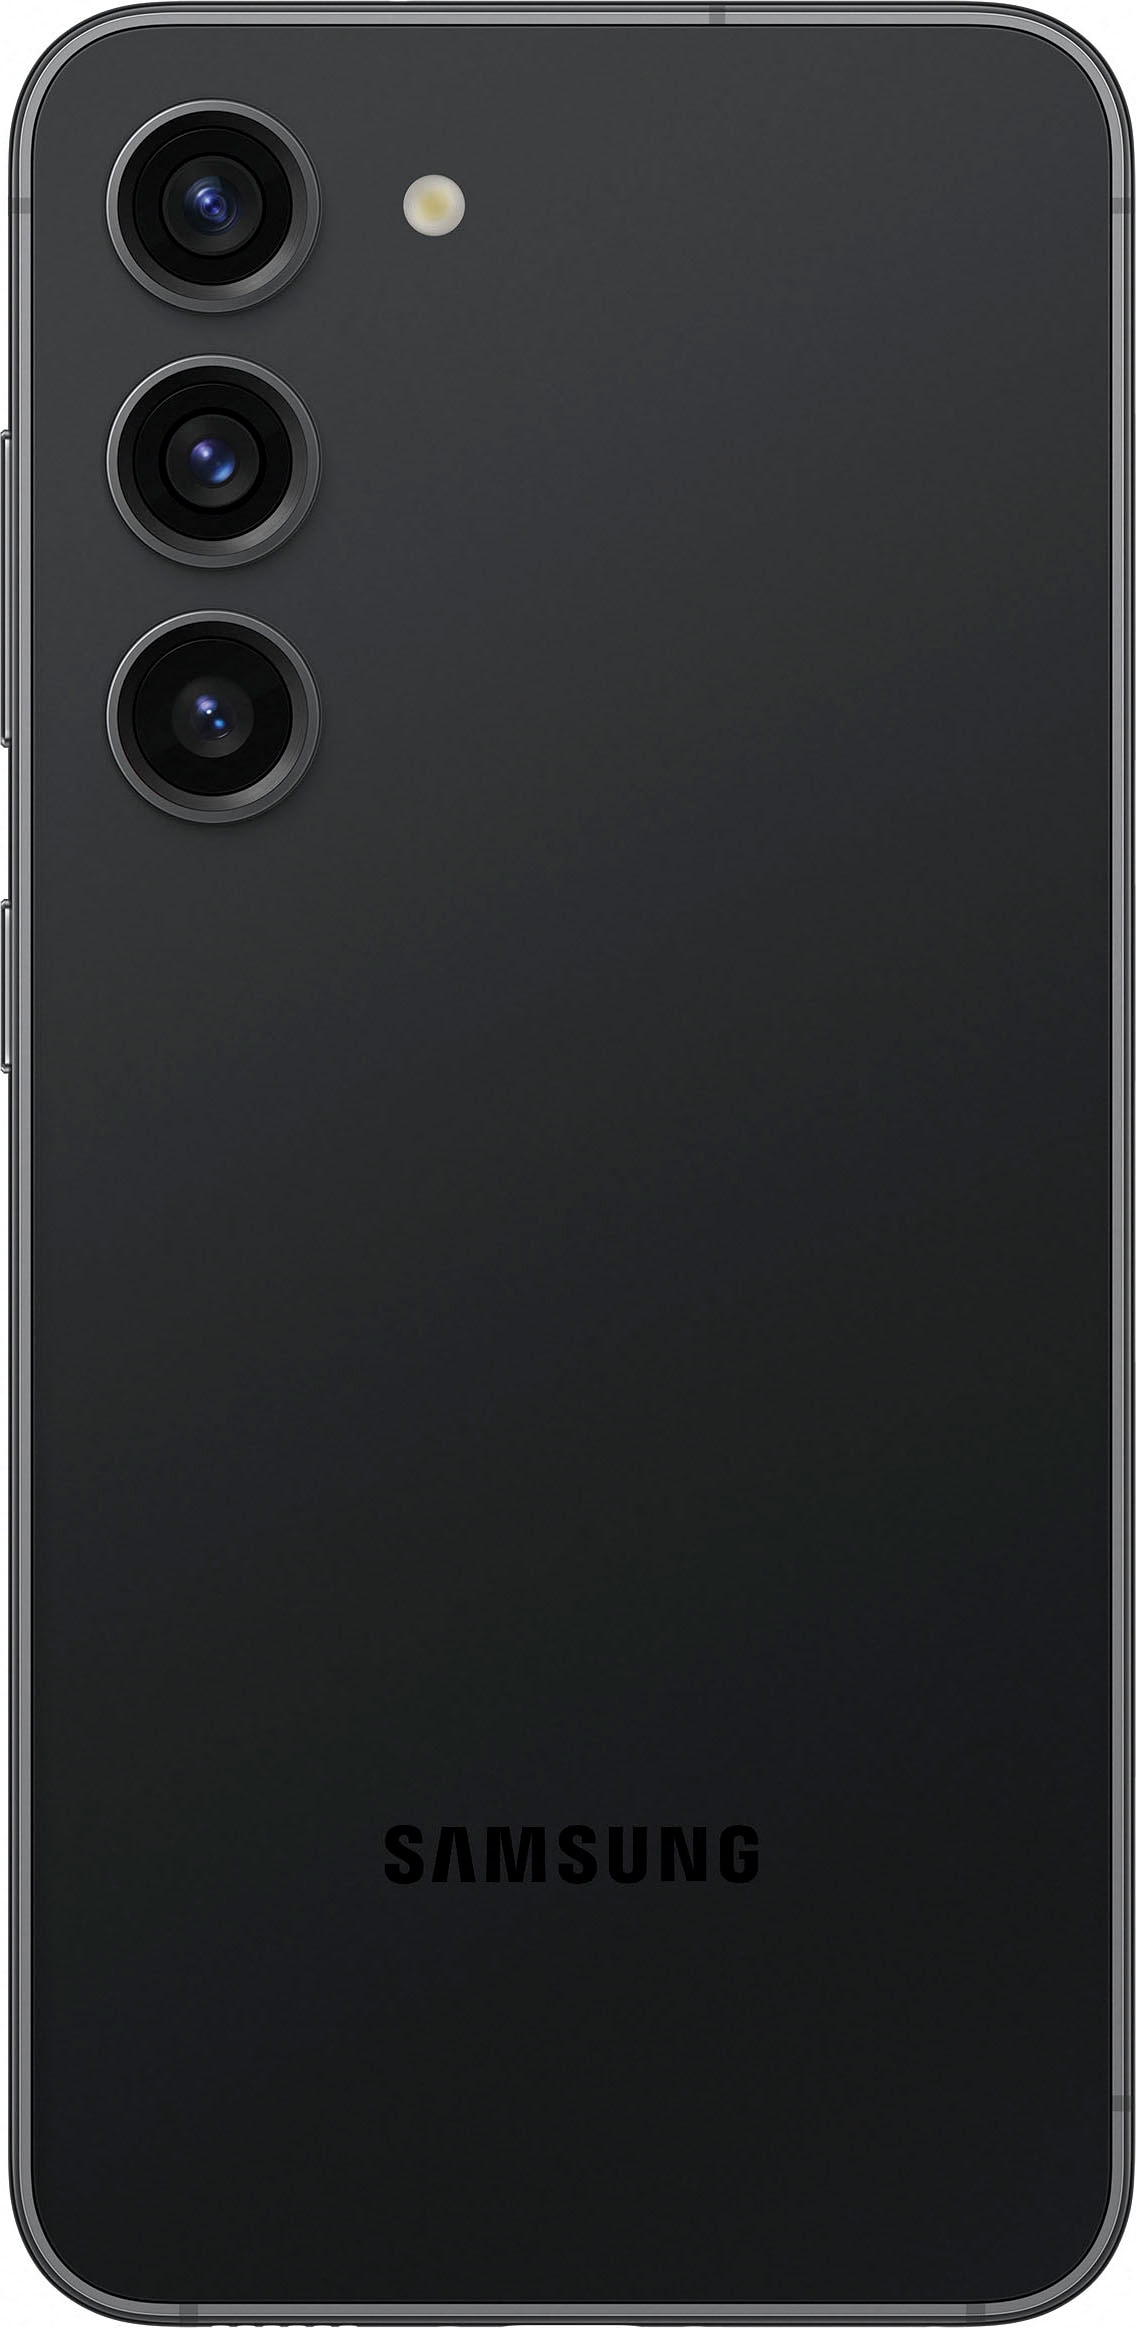 Samsung Smartphone »Galaxy S23, 128 GB«, schwarz, 15,39 cm/6,1 Zoll, 128 GB Speicherplatz, 50 MP Kamera, AI-Funktionen